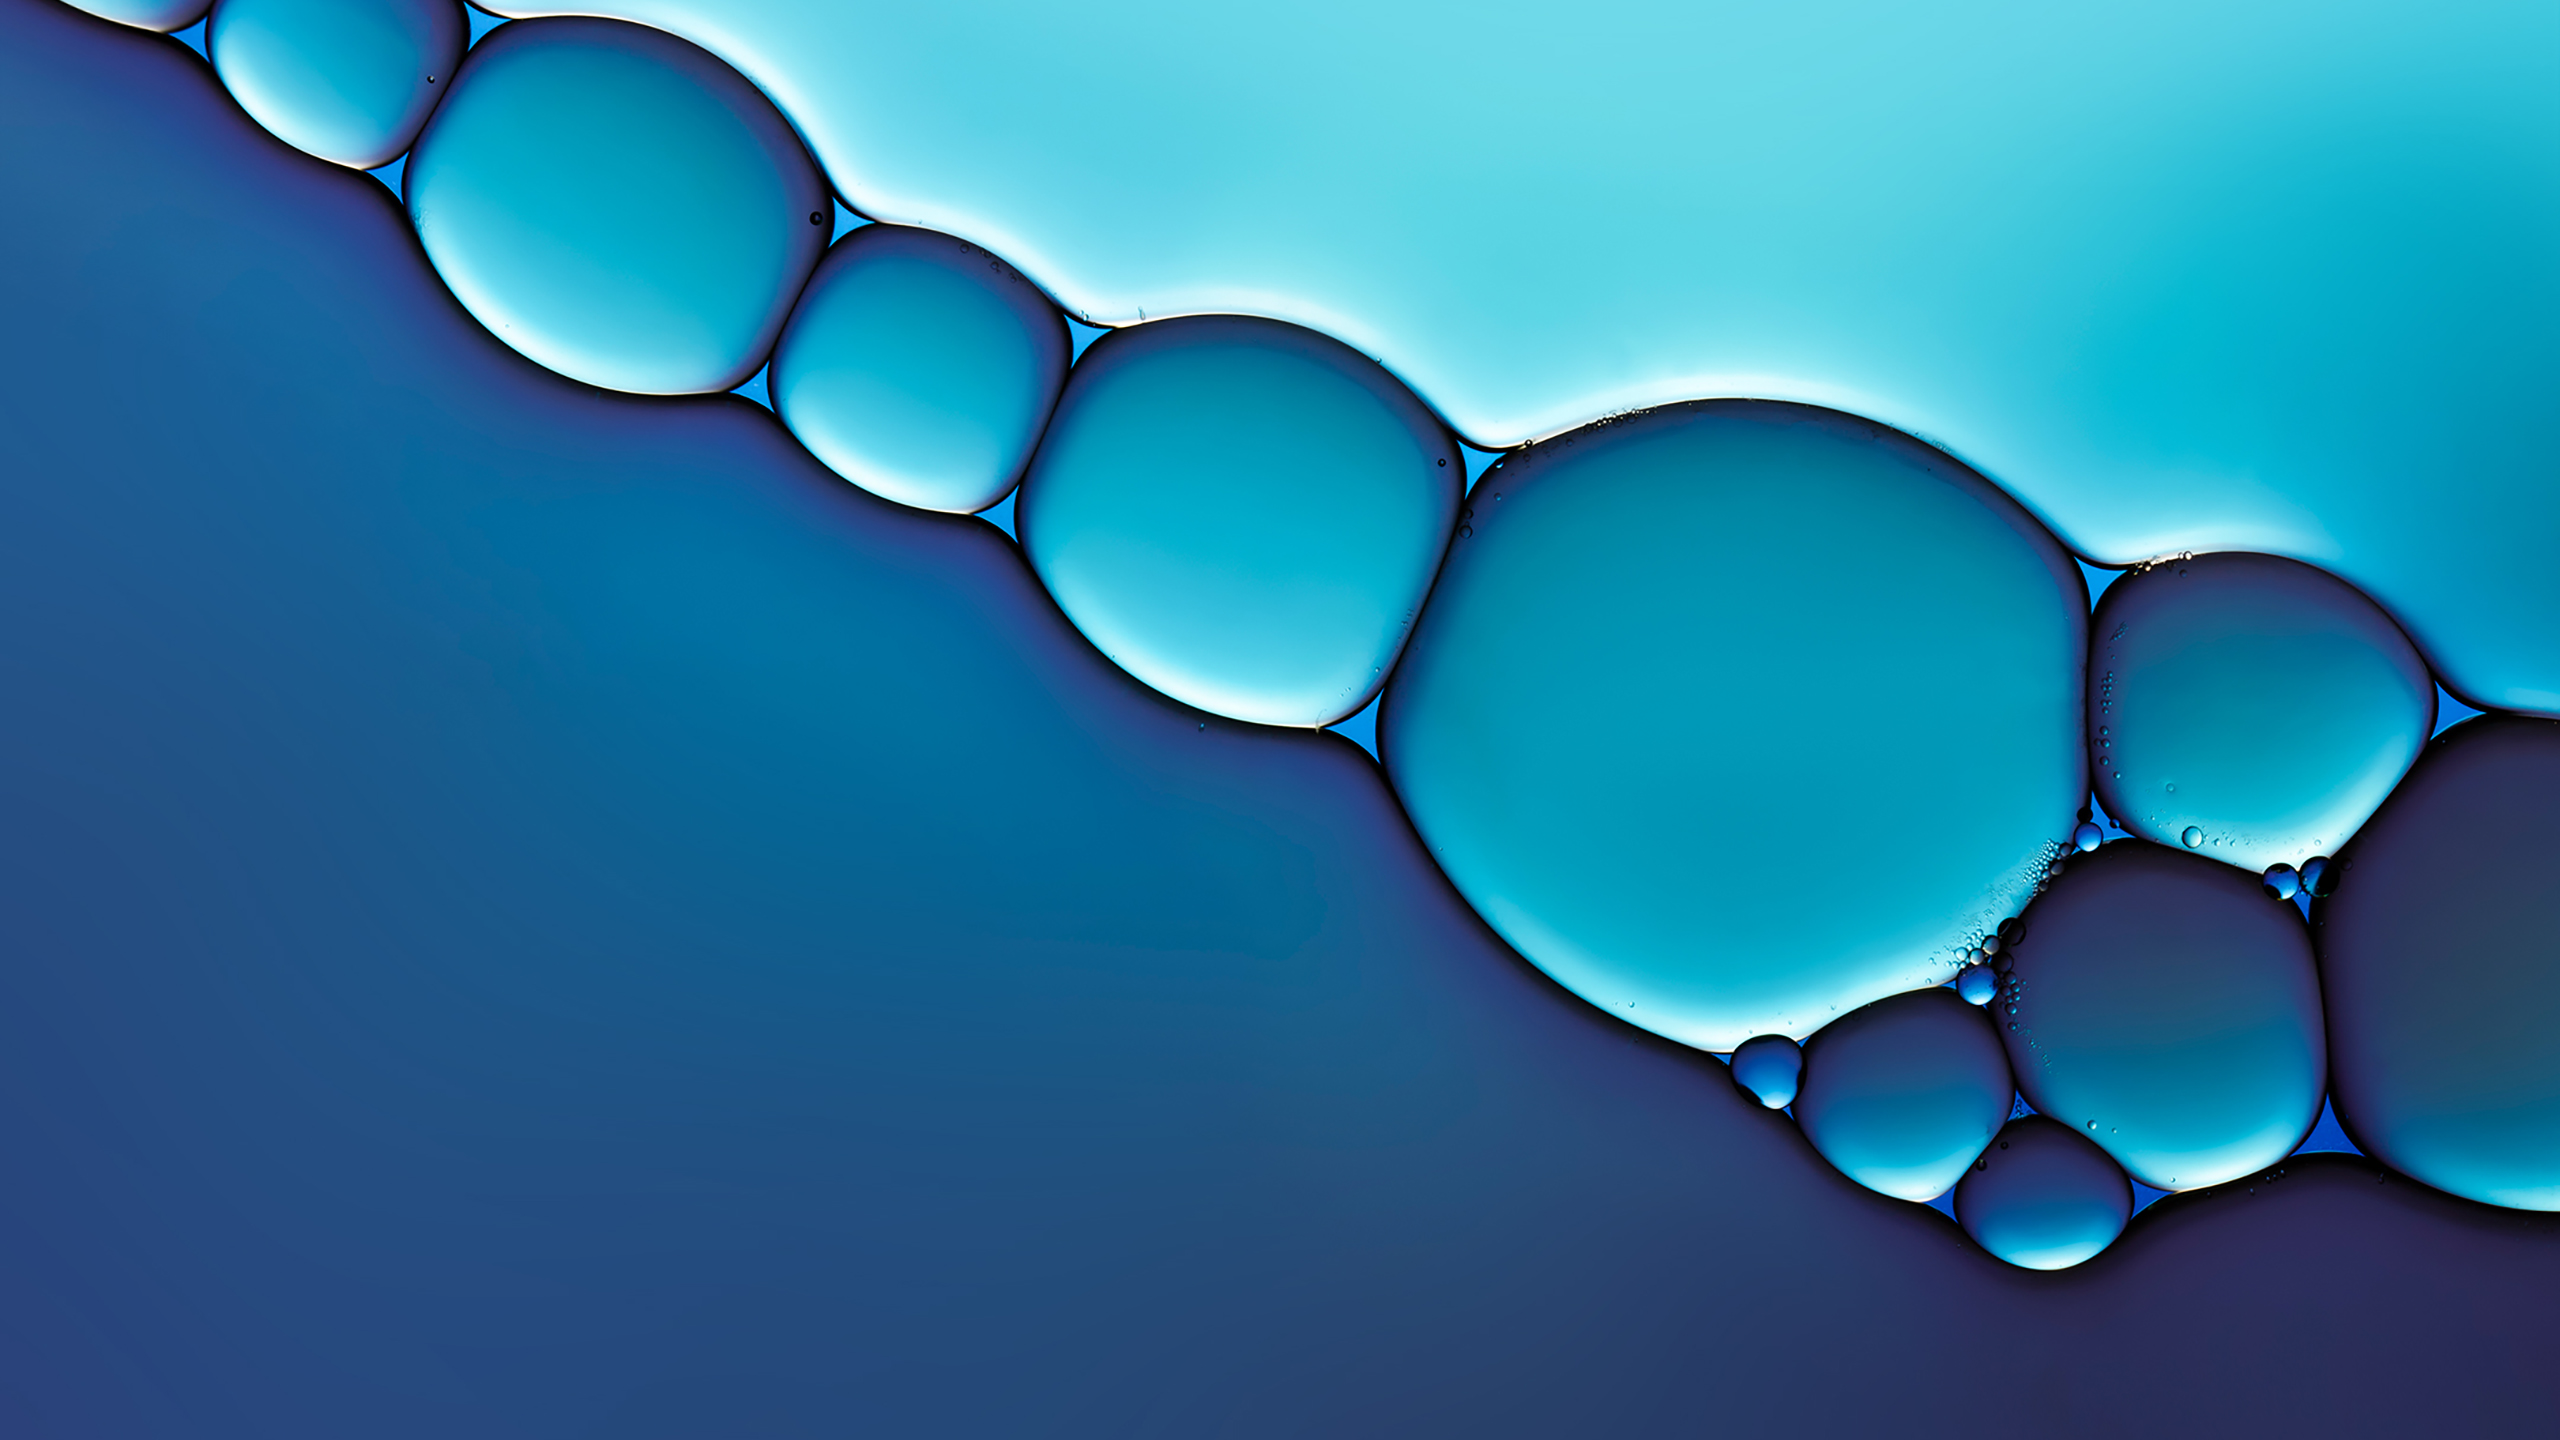 Скачать обои бесплатно Пузыри, Синий, Абстрактные картинка на рабочий стол ПК